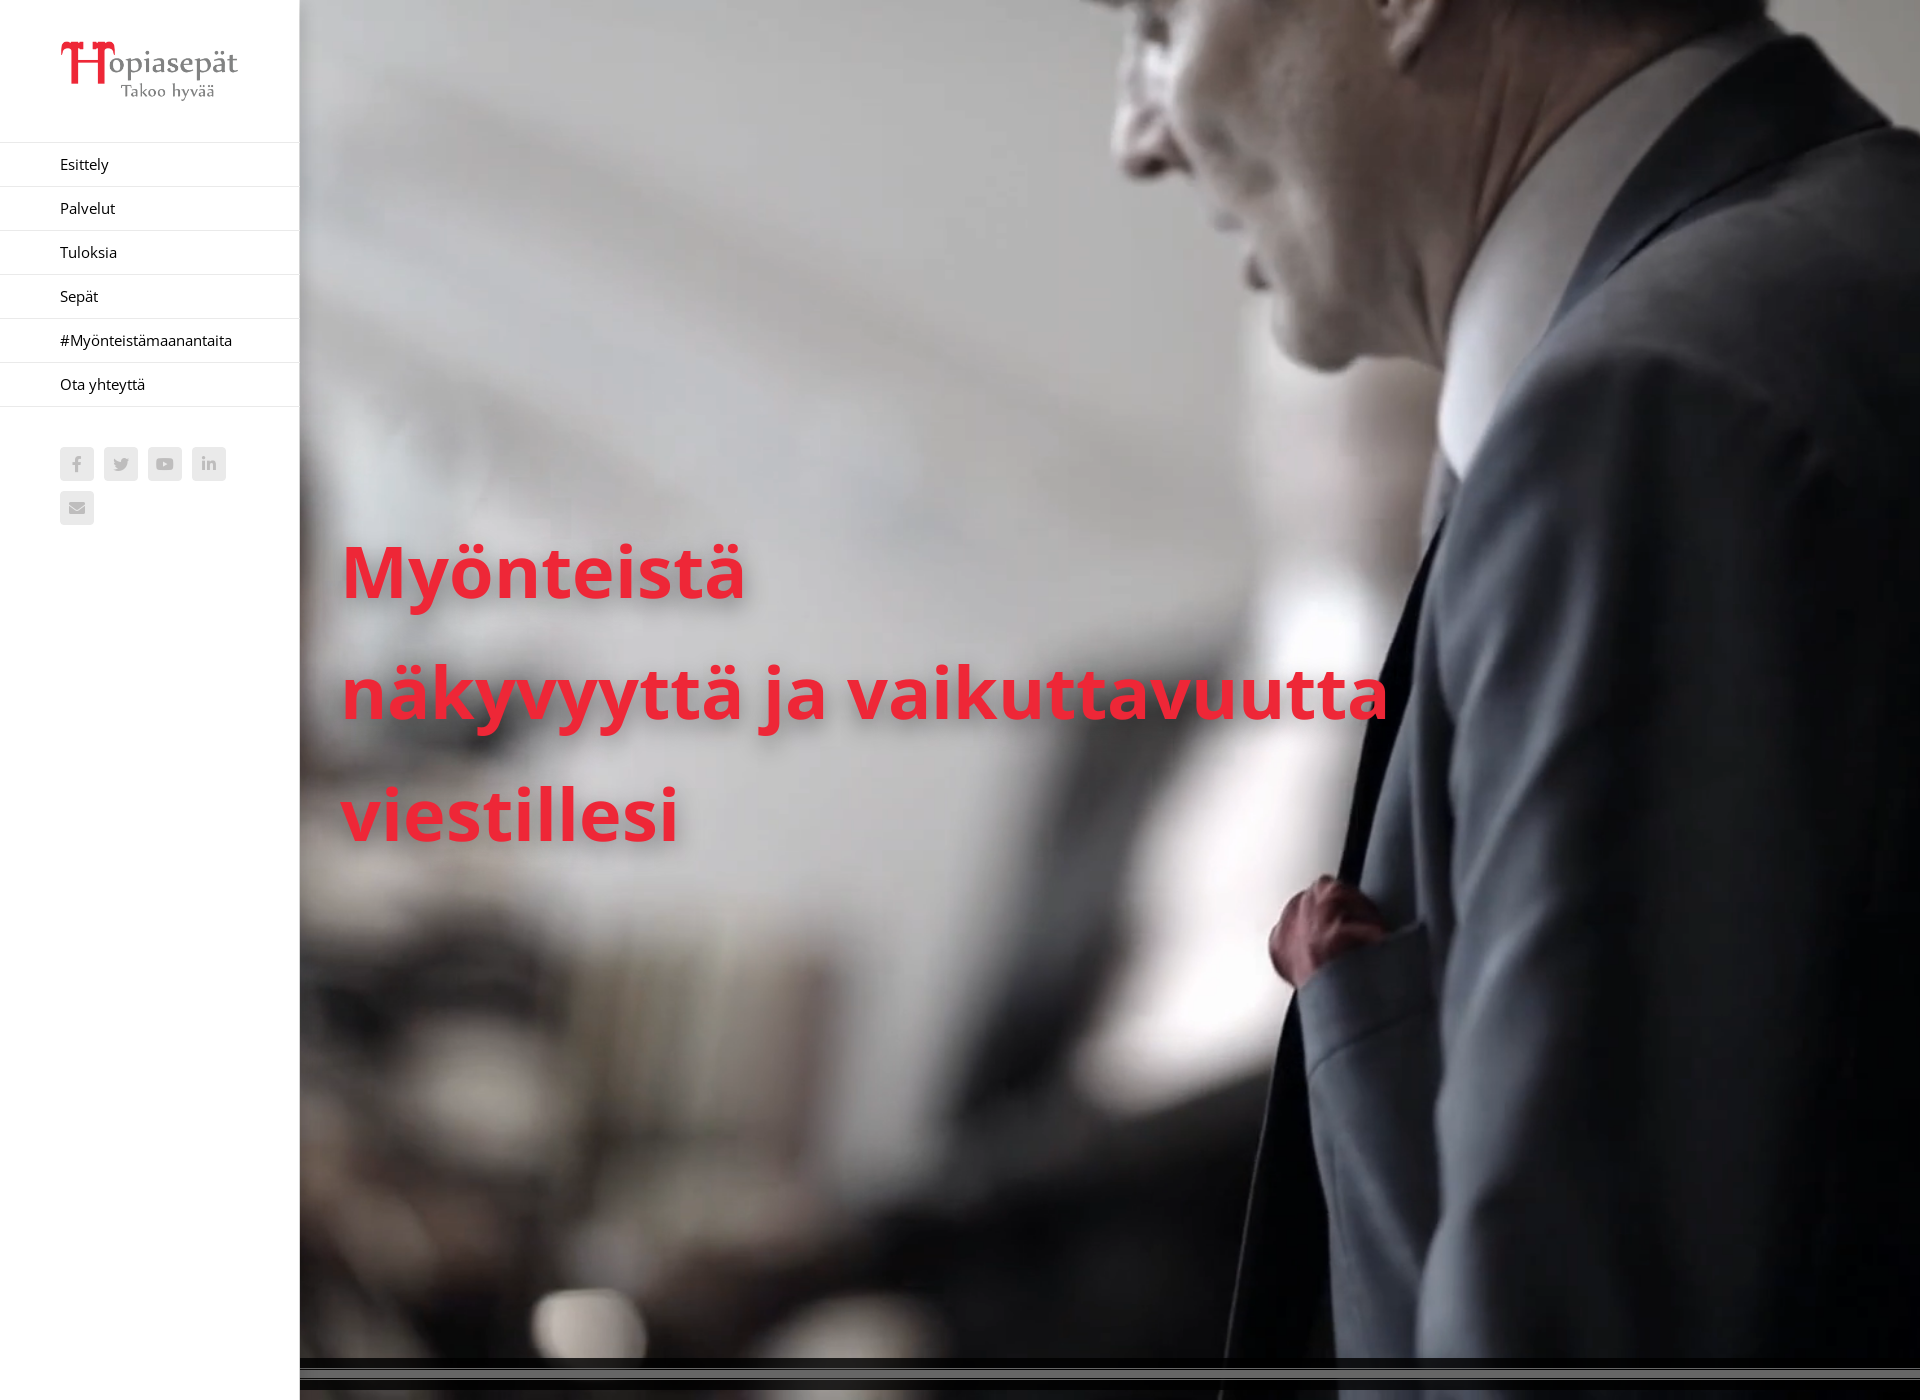 Näyttökuva hopiasepat.fi